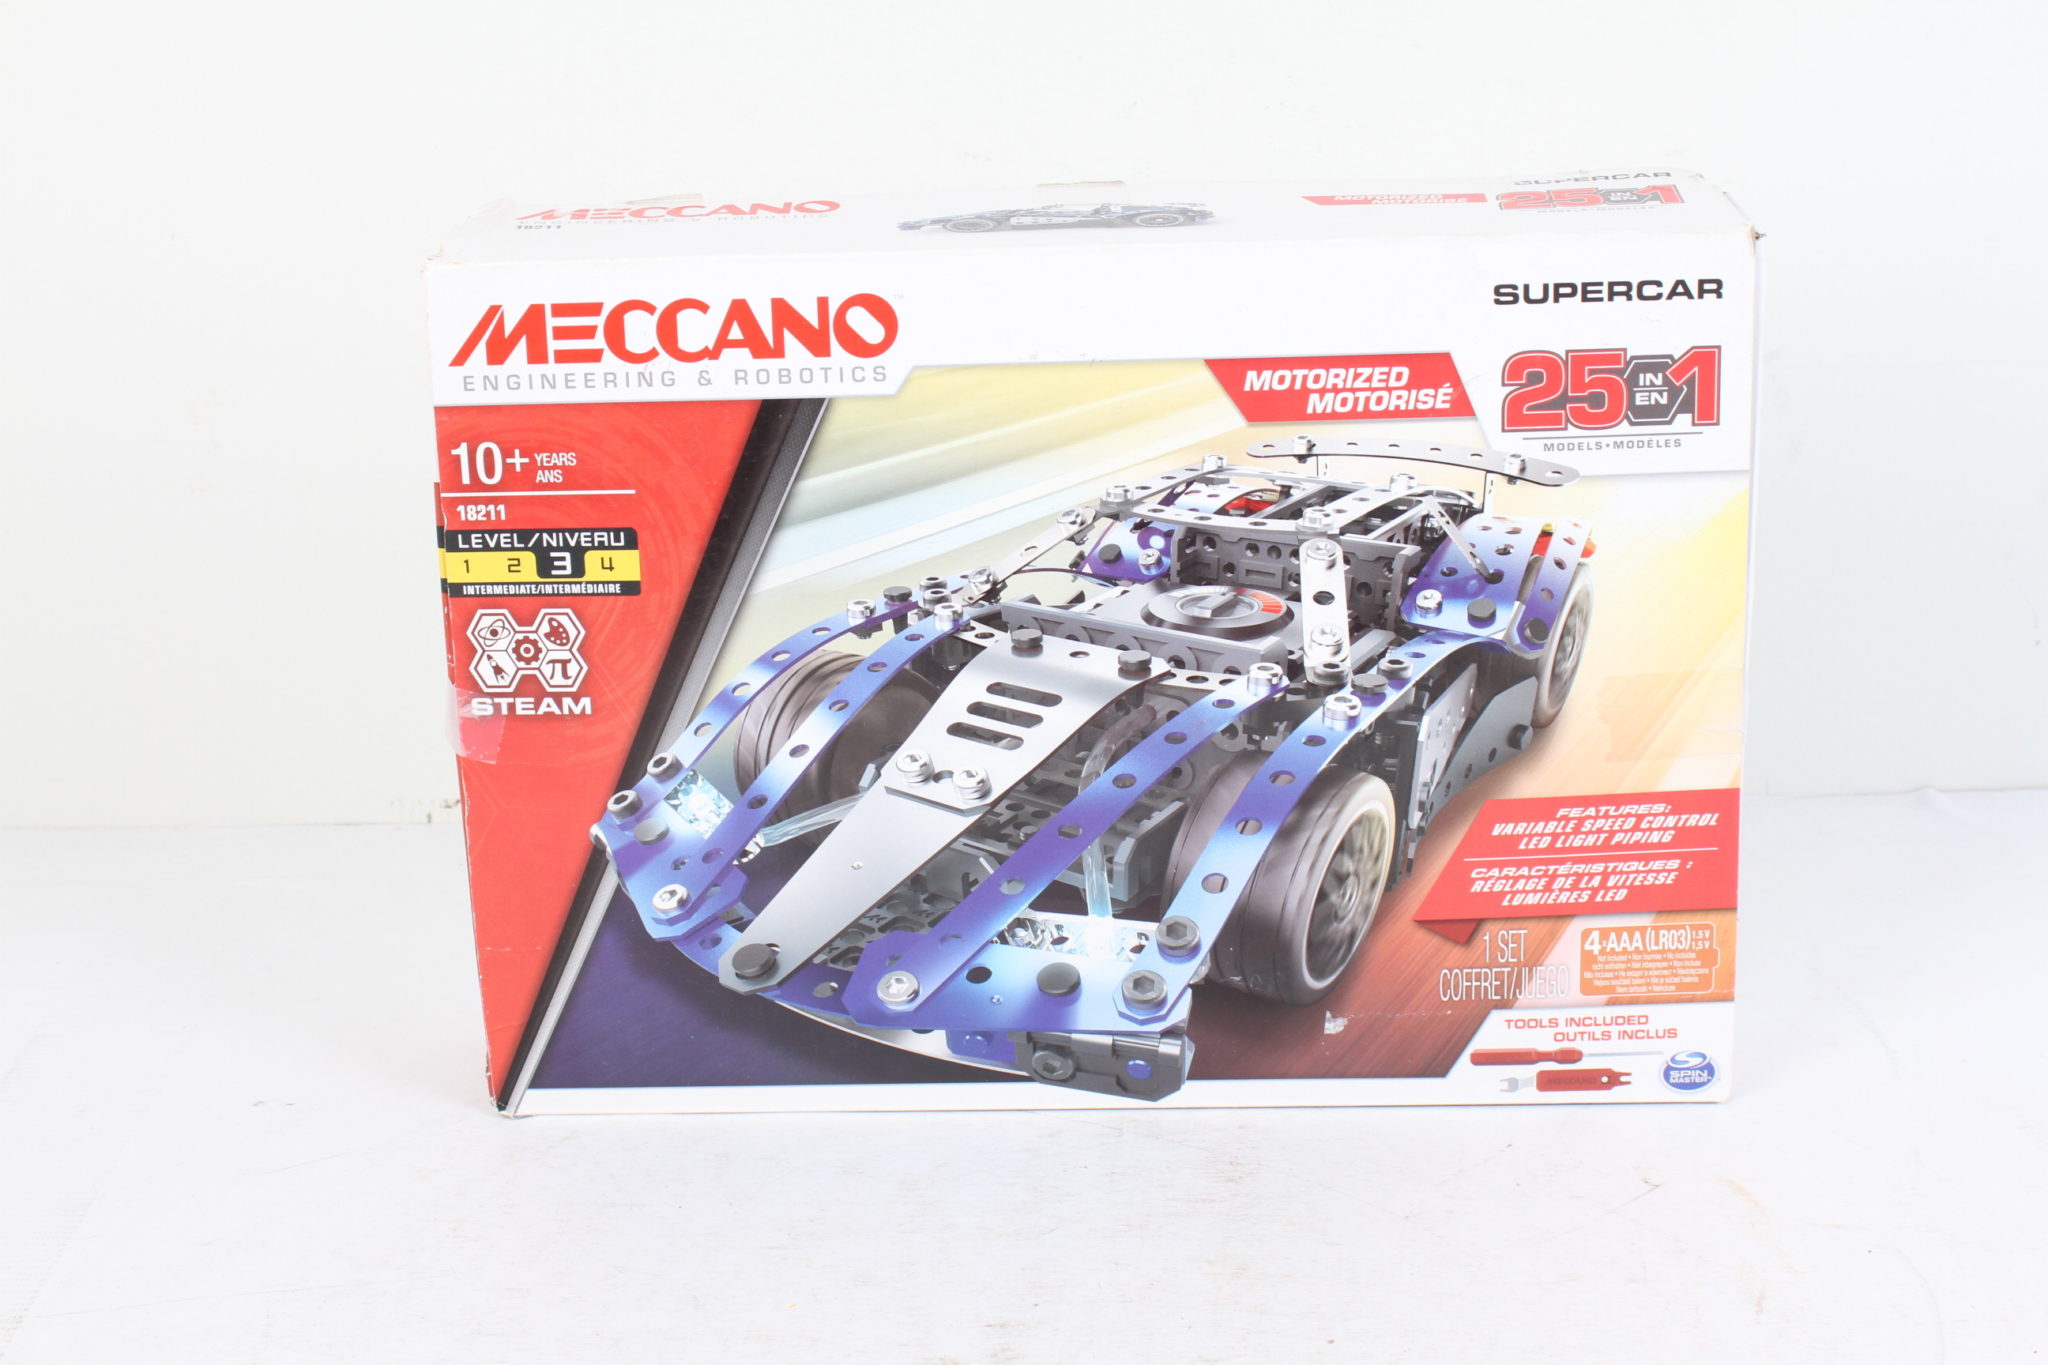 Meccano Supercar 25 voitures motorisées à construire